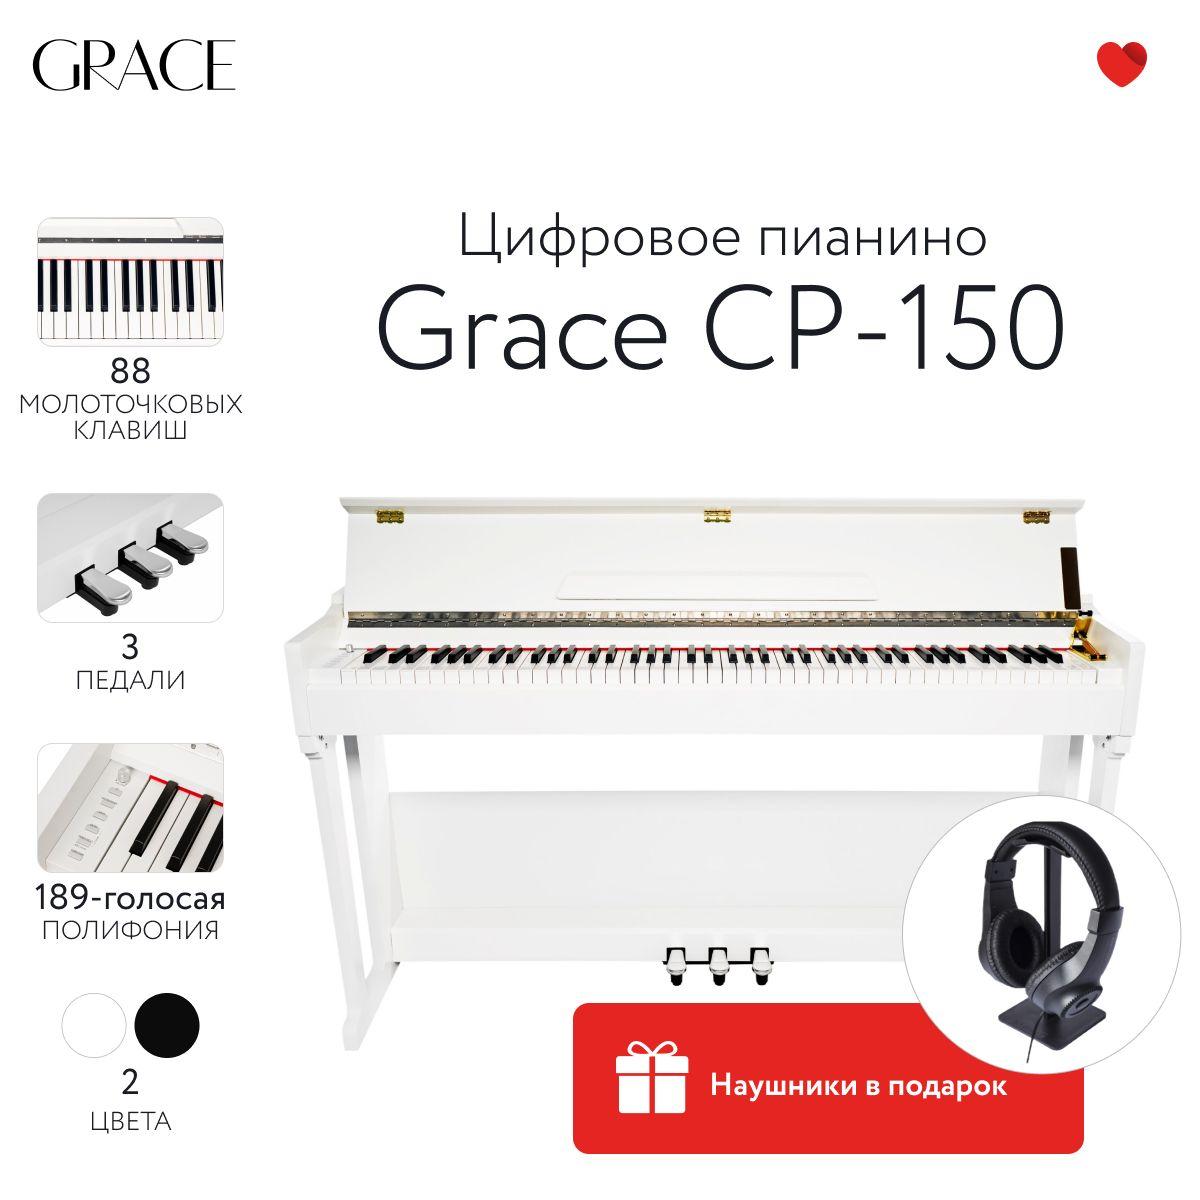 Grace CP-150 WH - Цифровое пианино в корпусе с тремя педалями